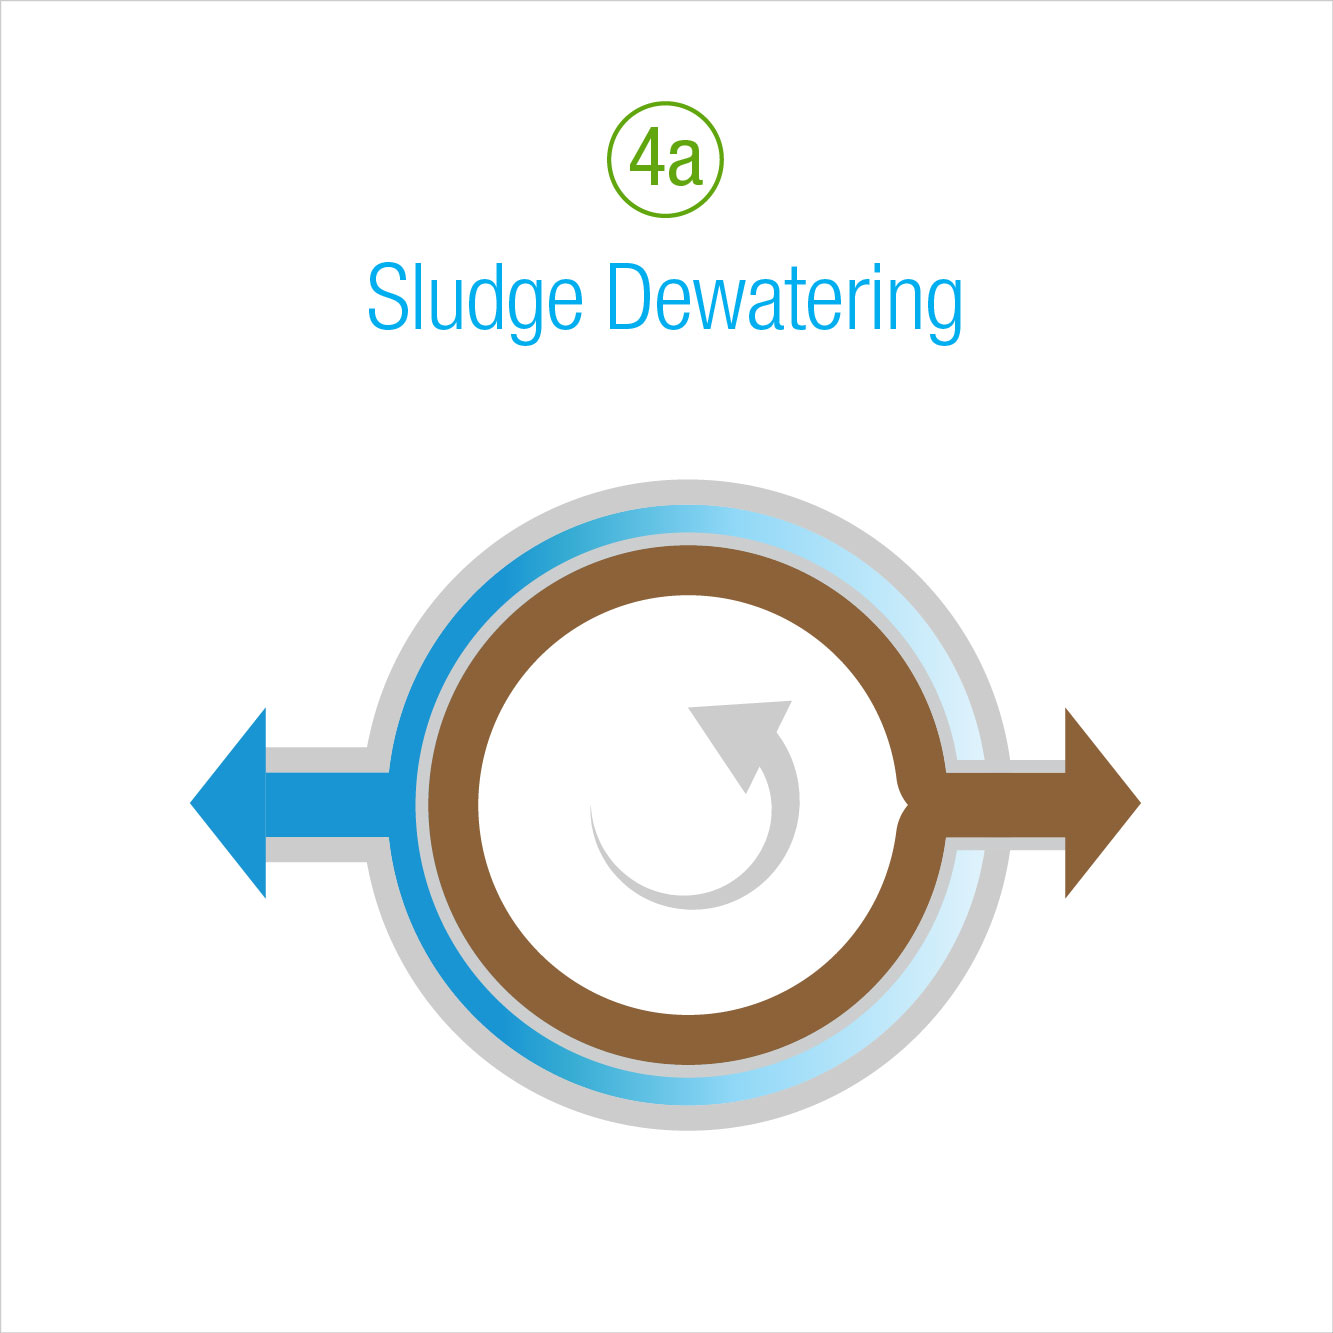 4a: Sludge Dewatering